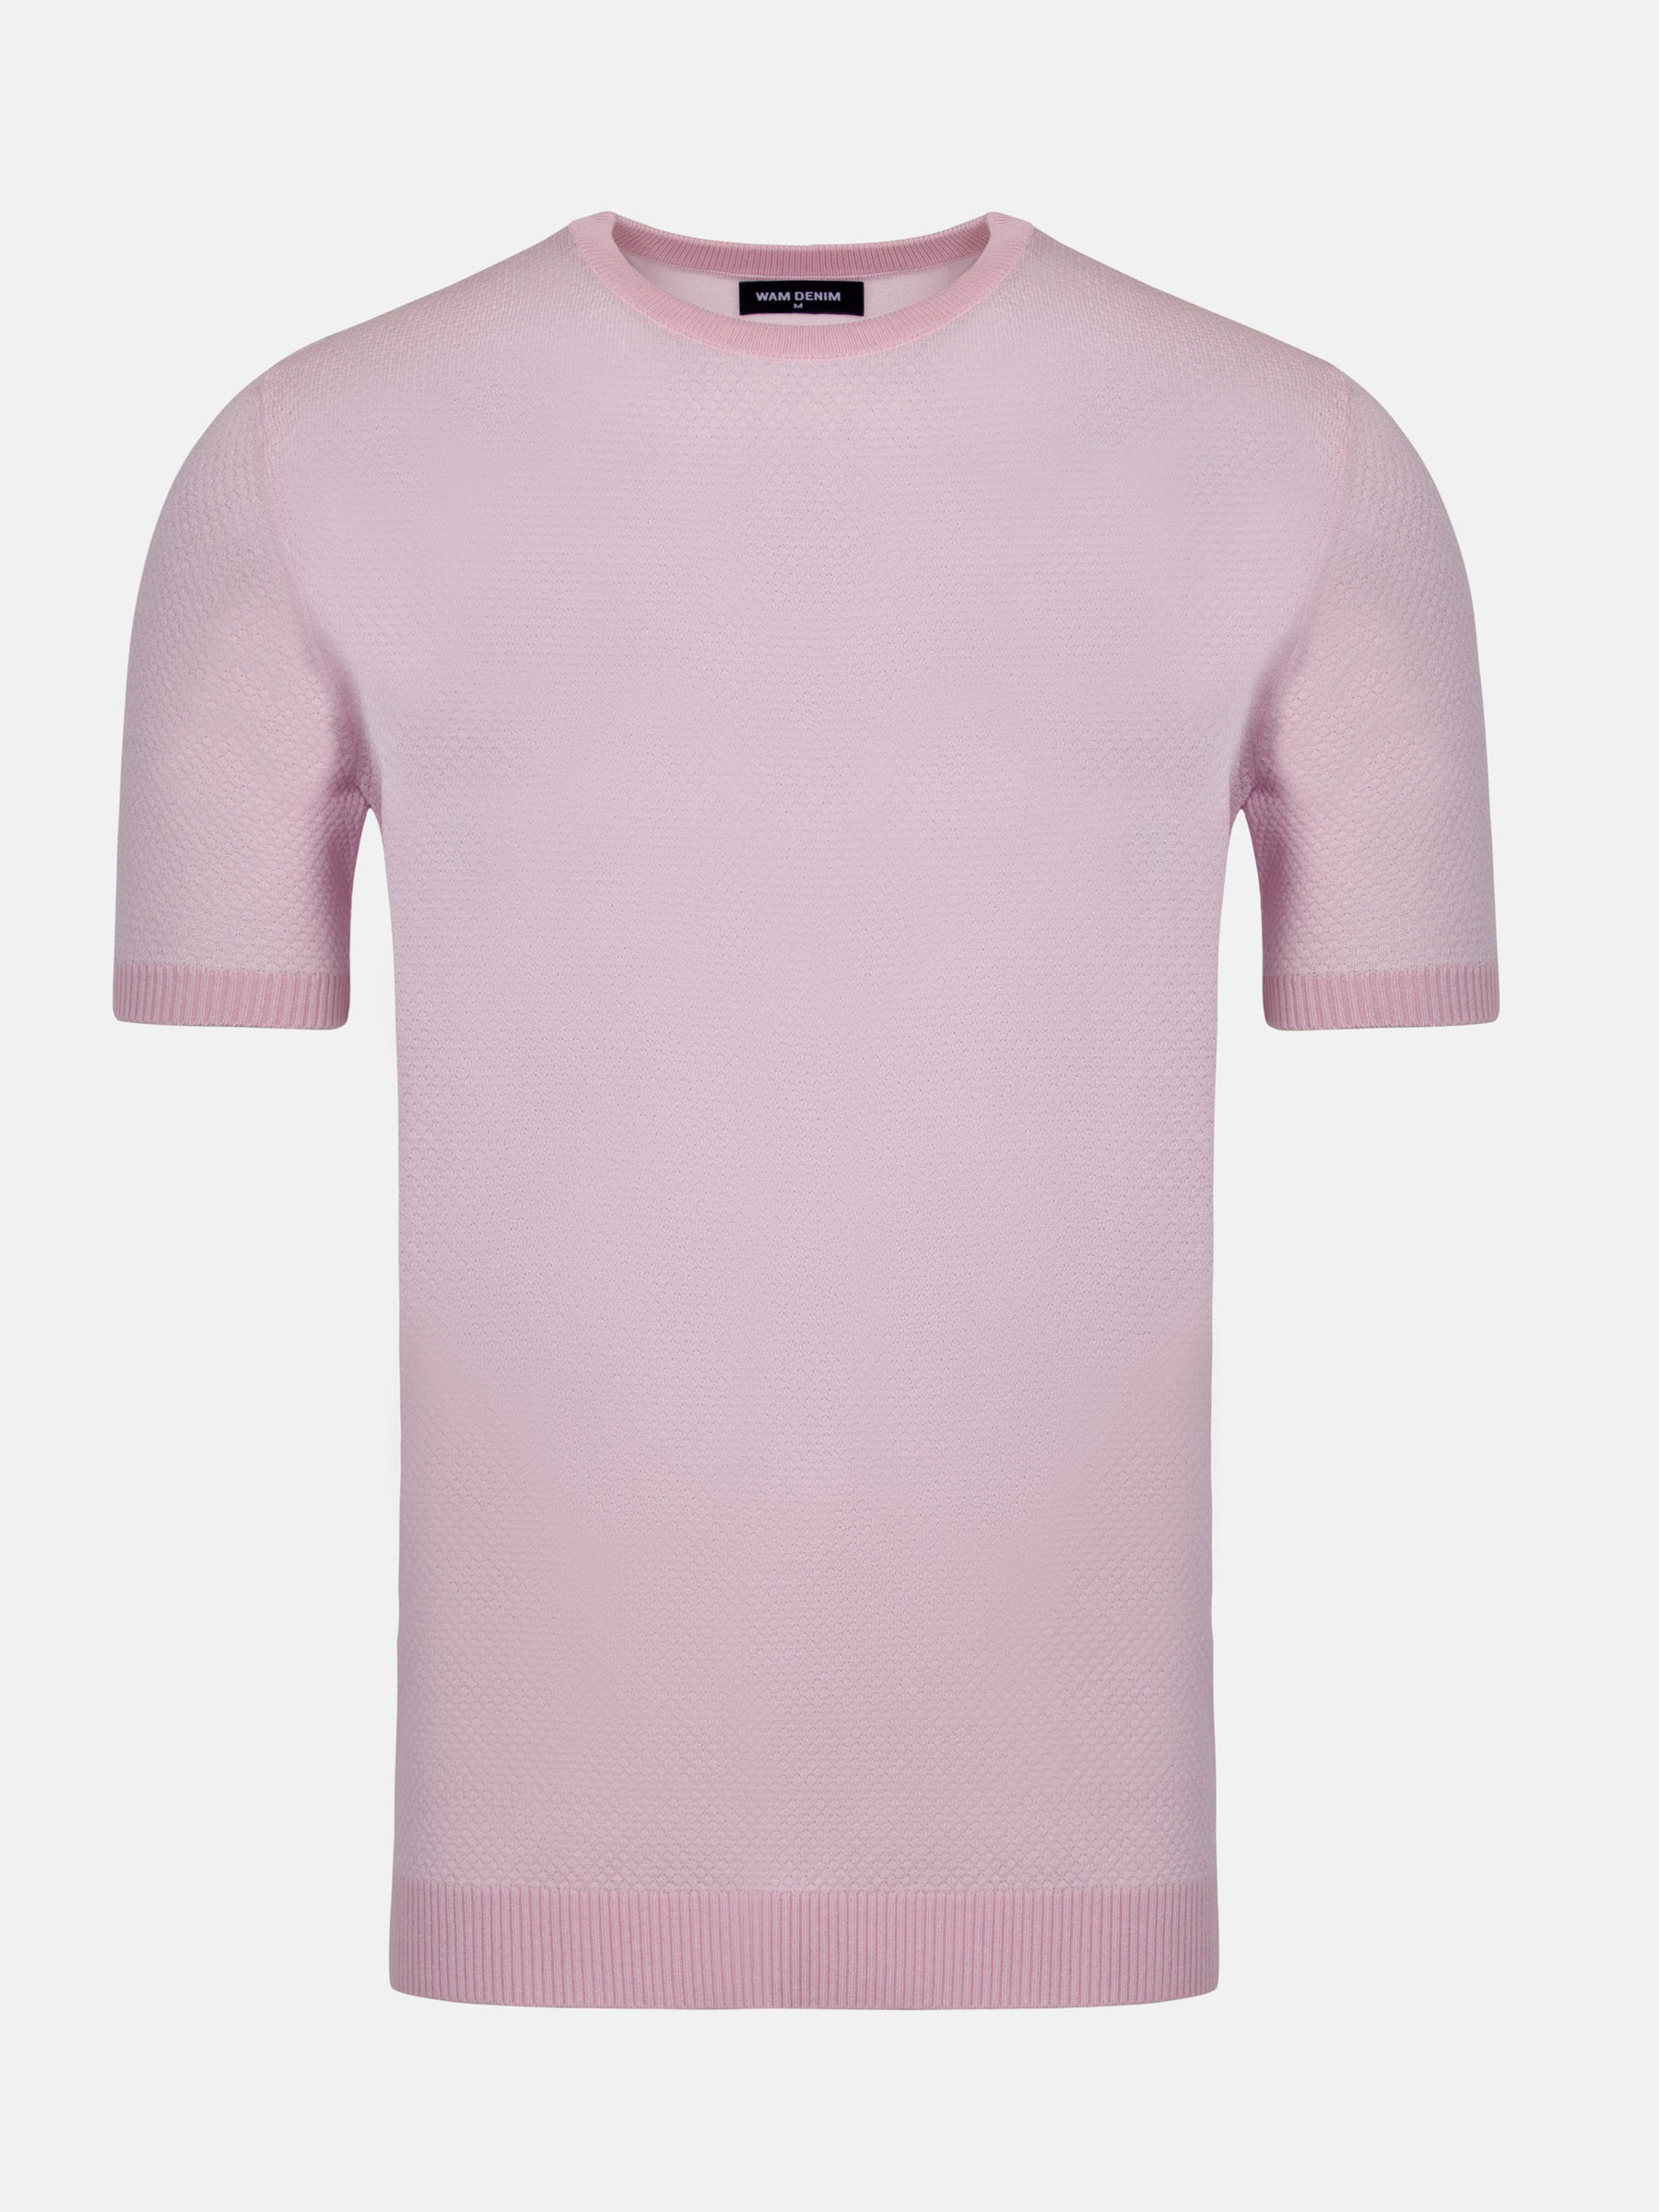 WAM Denim Lucas Pique Knit Pink T-Shirt-